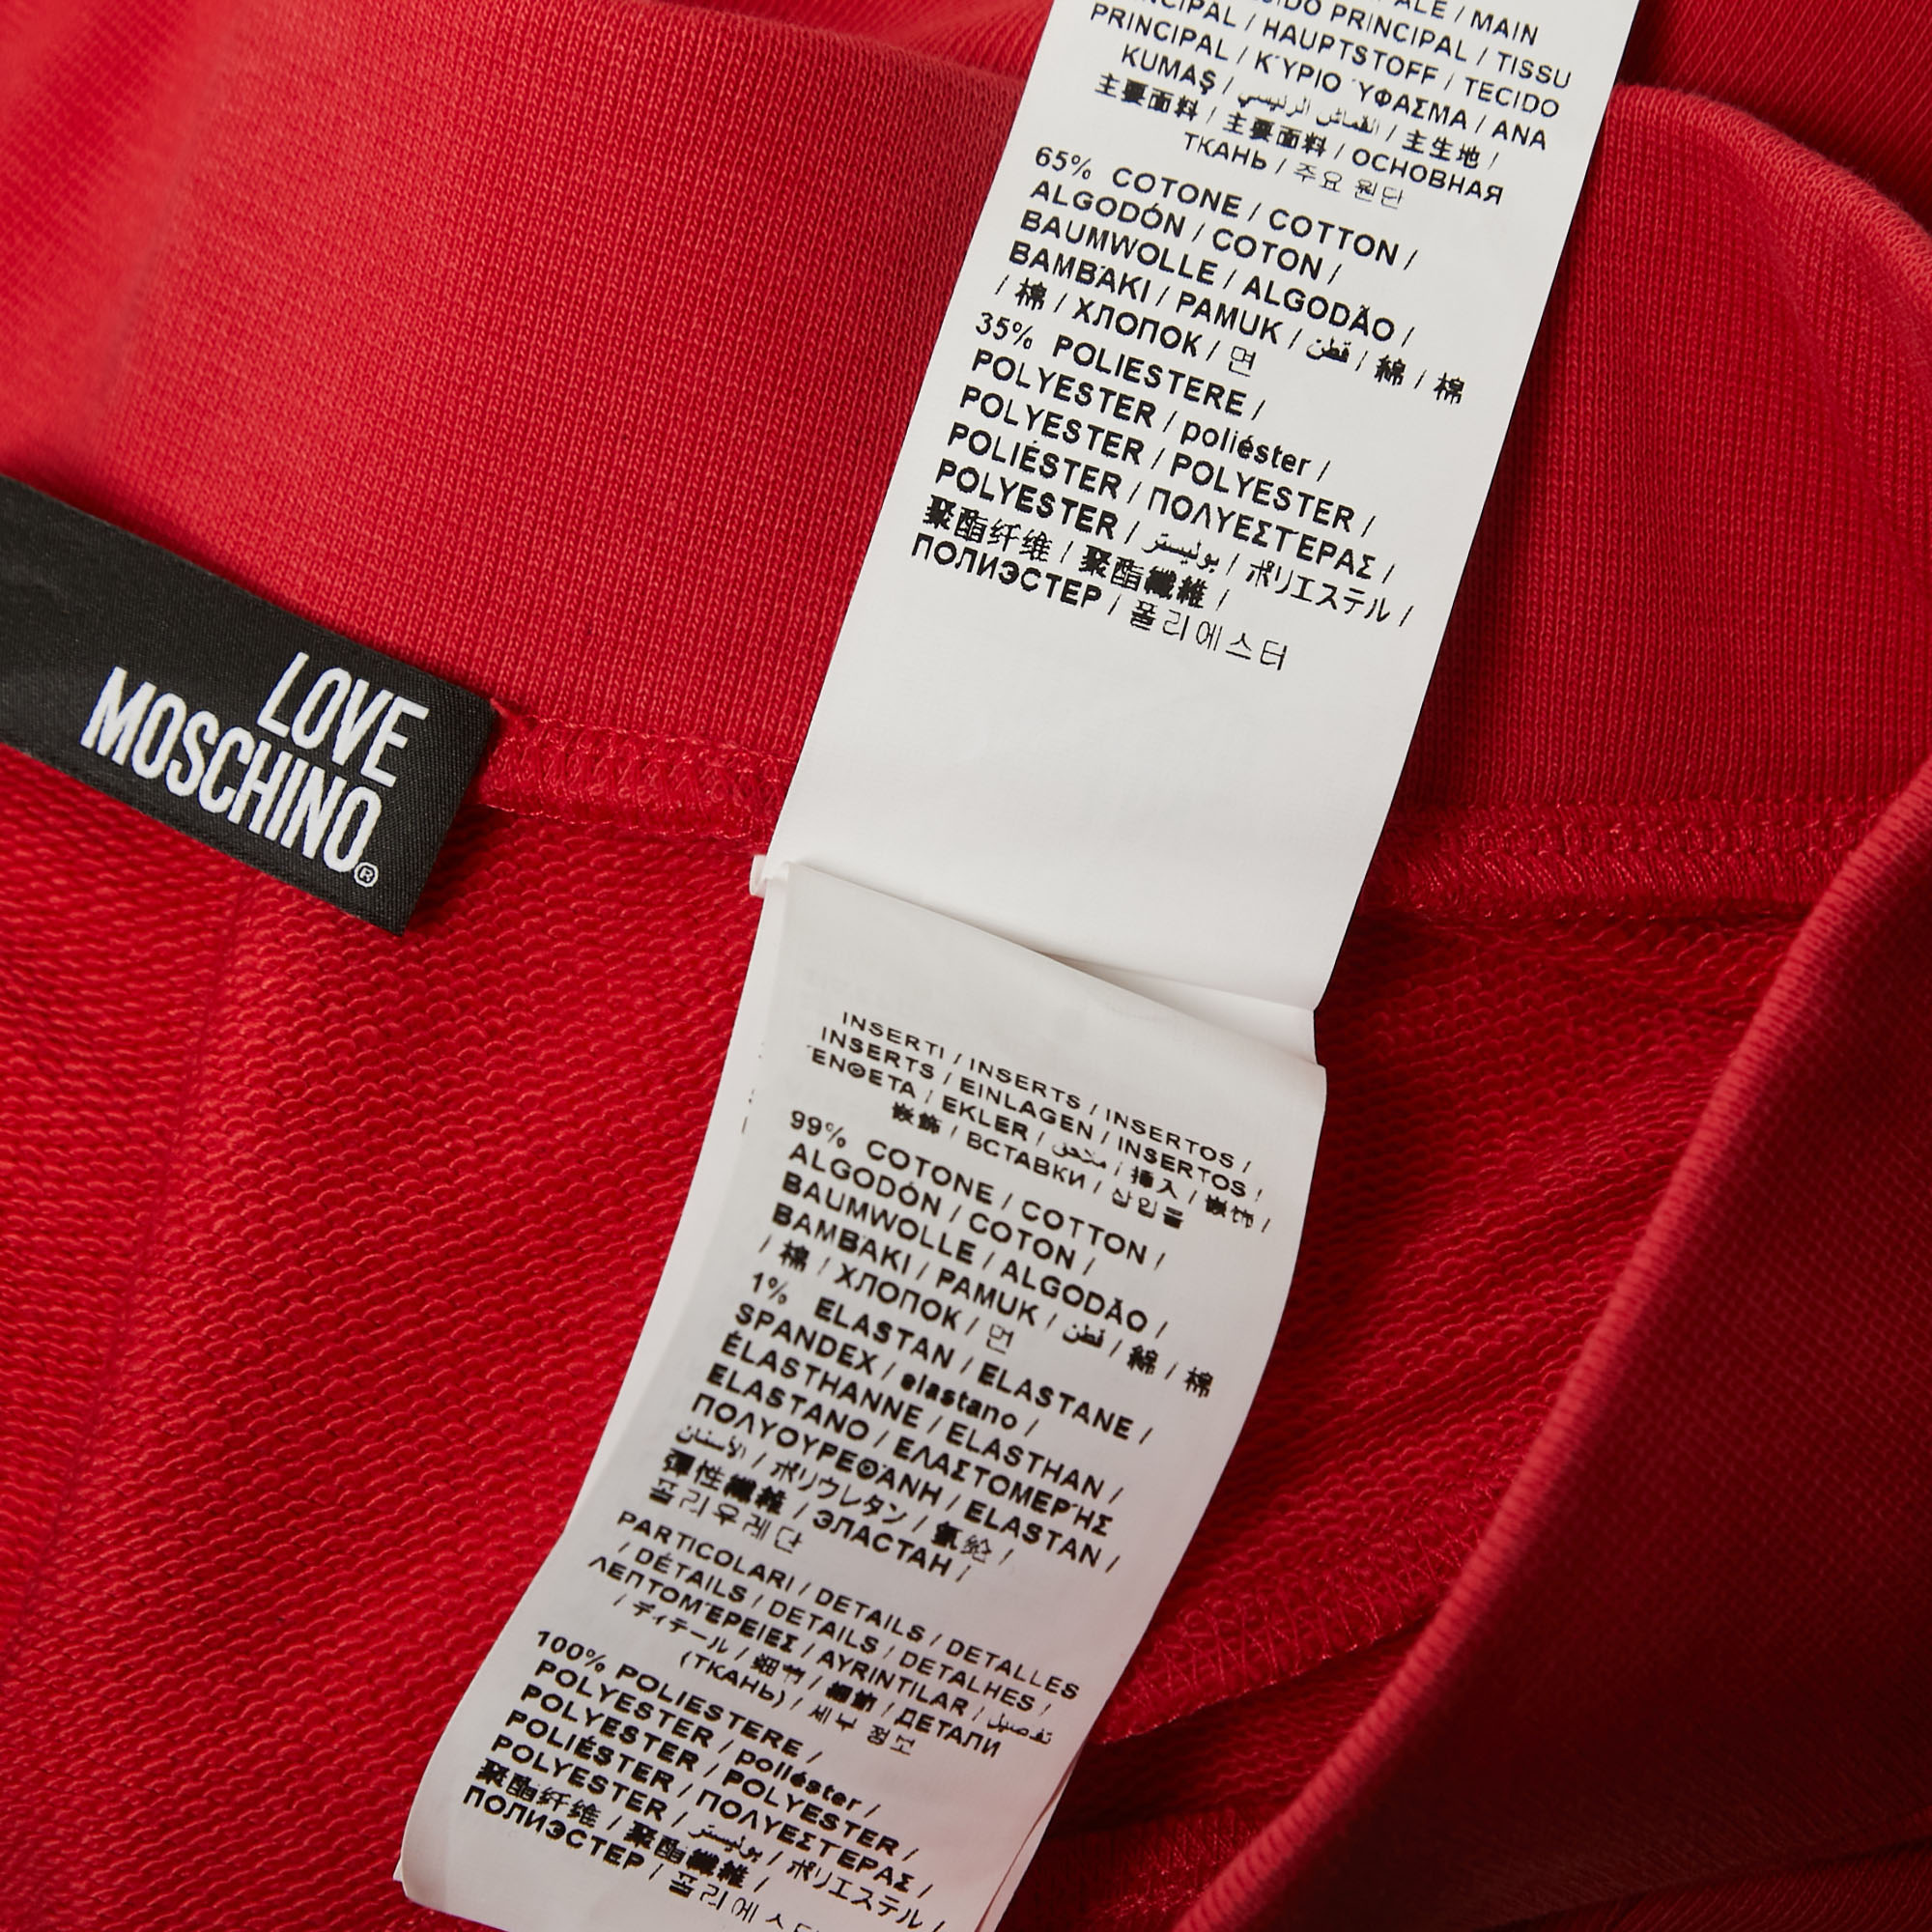 Love Moschino Red Knit Zip Detailed Mini Skirt S